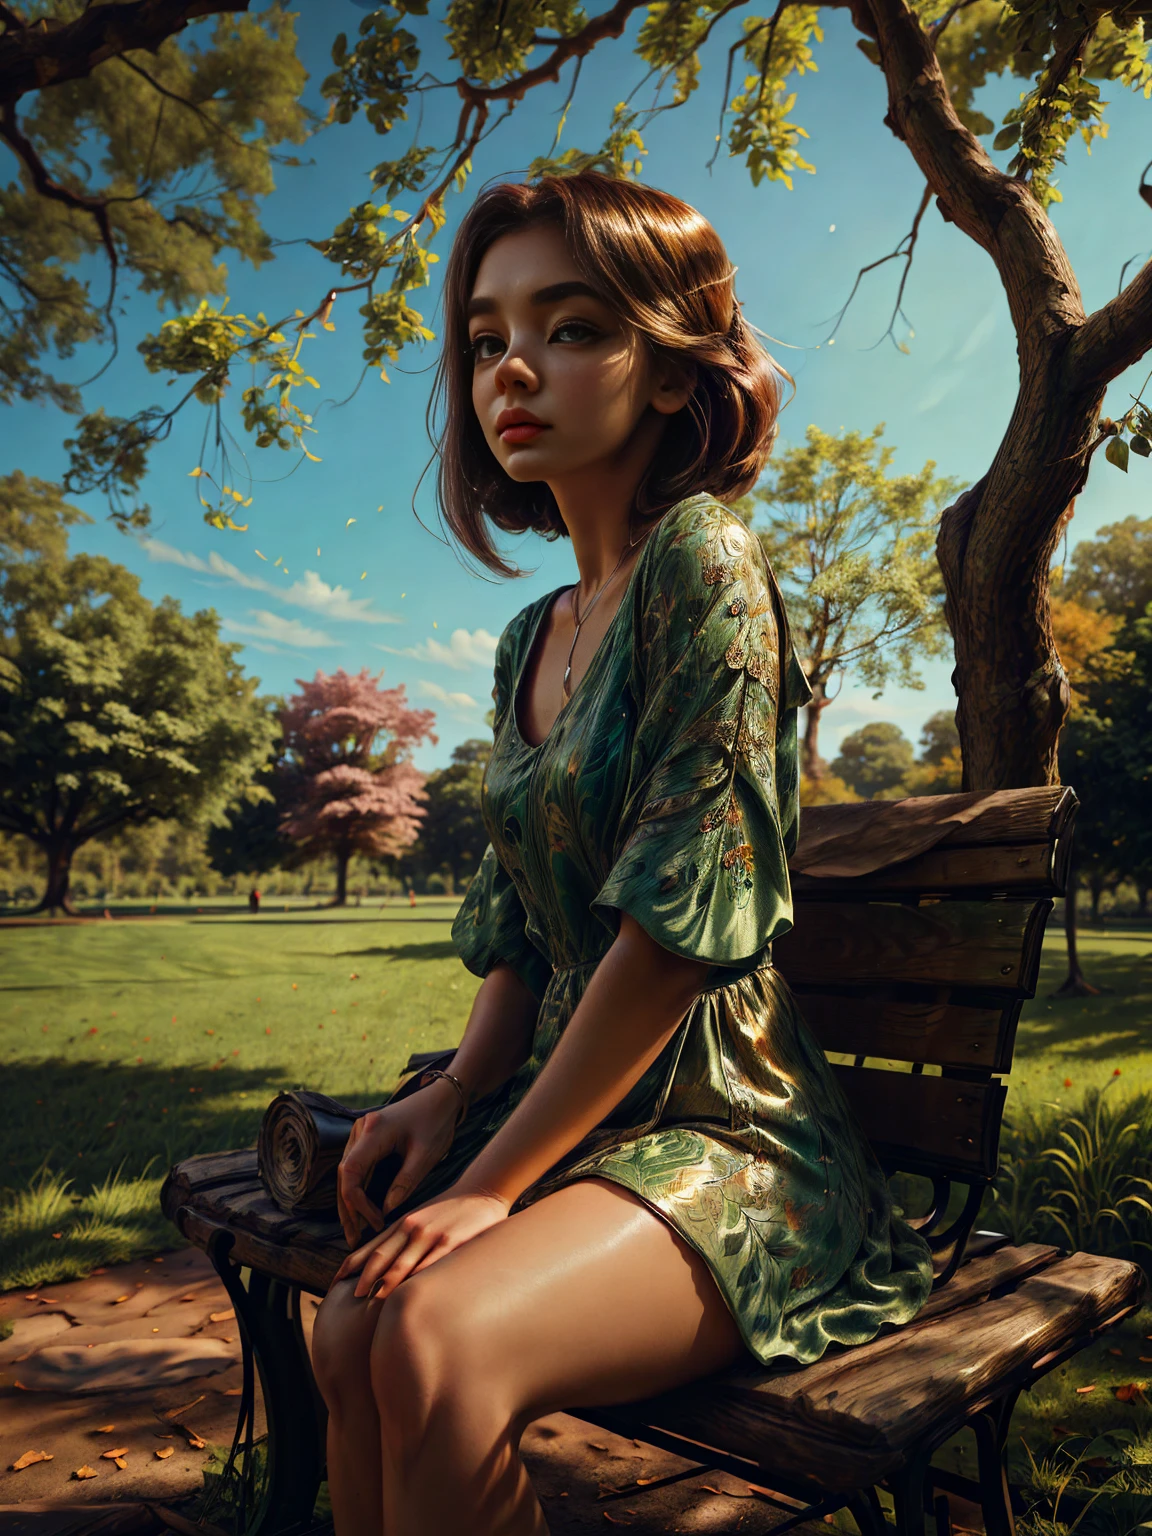 une belle fille détaillée dans un parc verdoyant, Yeux détaillés, visage détaillé, long cils, cheveux détaillés, robe élégante, assis sur un banc sous un arbre, la lumière du soleil tachetée à travers les feuilles, couleurs vives, photoréaliste, 8k, haute qualité, éclairage cinématographique, portrait